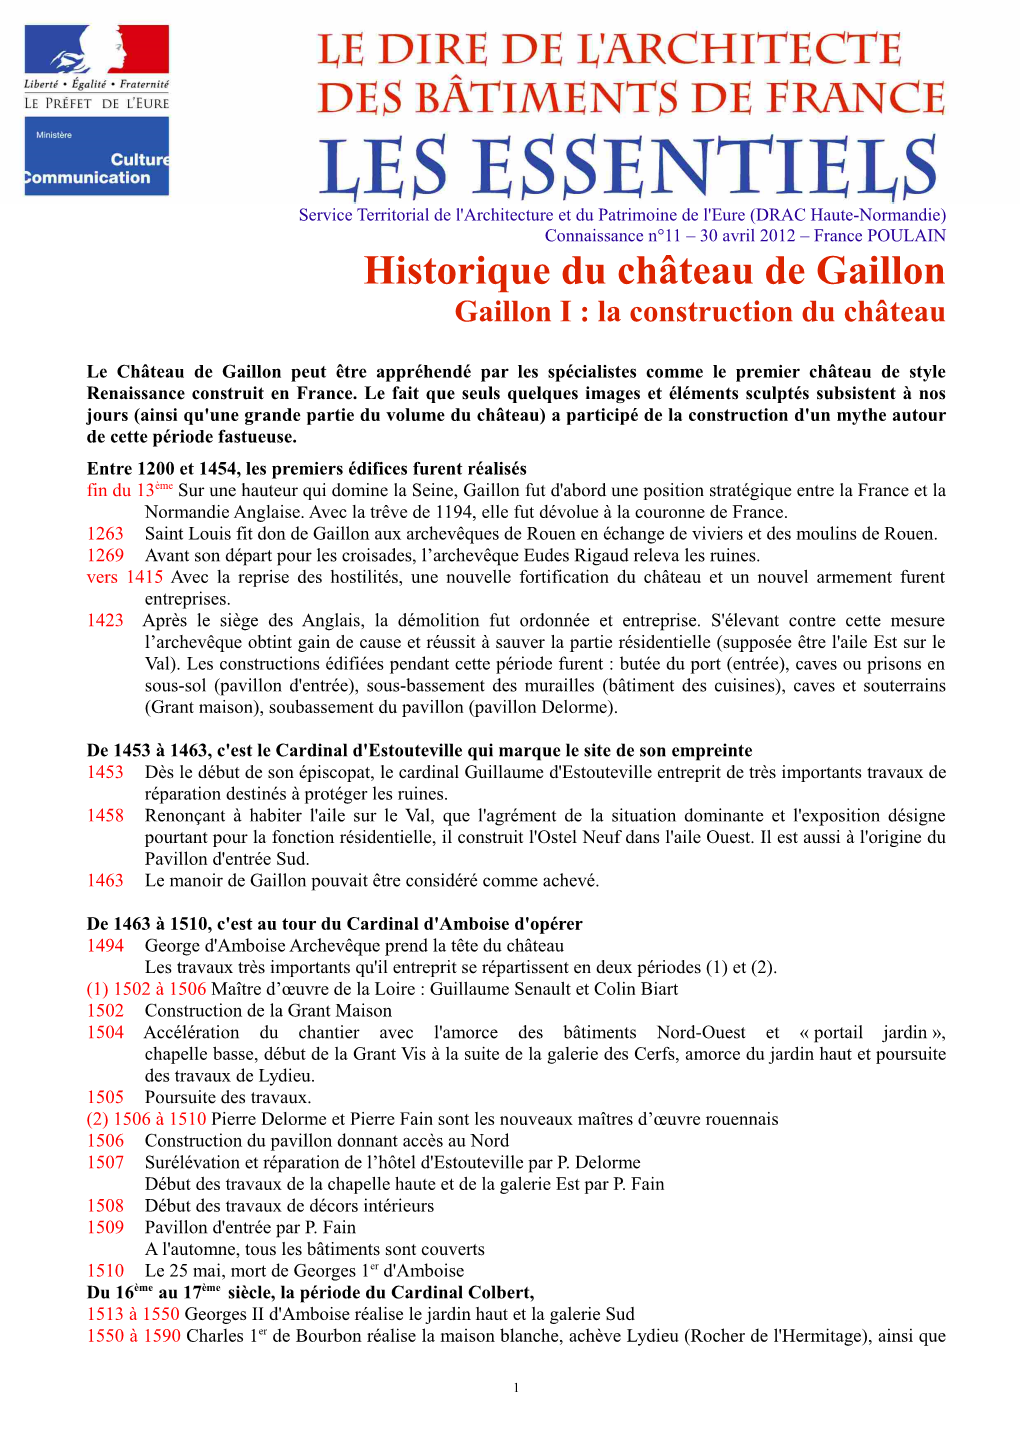 Historique Du Château De Gaillon Gaillon I : La Construction Du Château